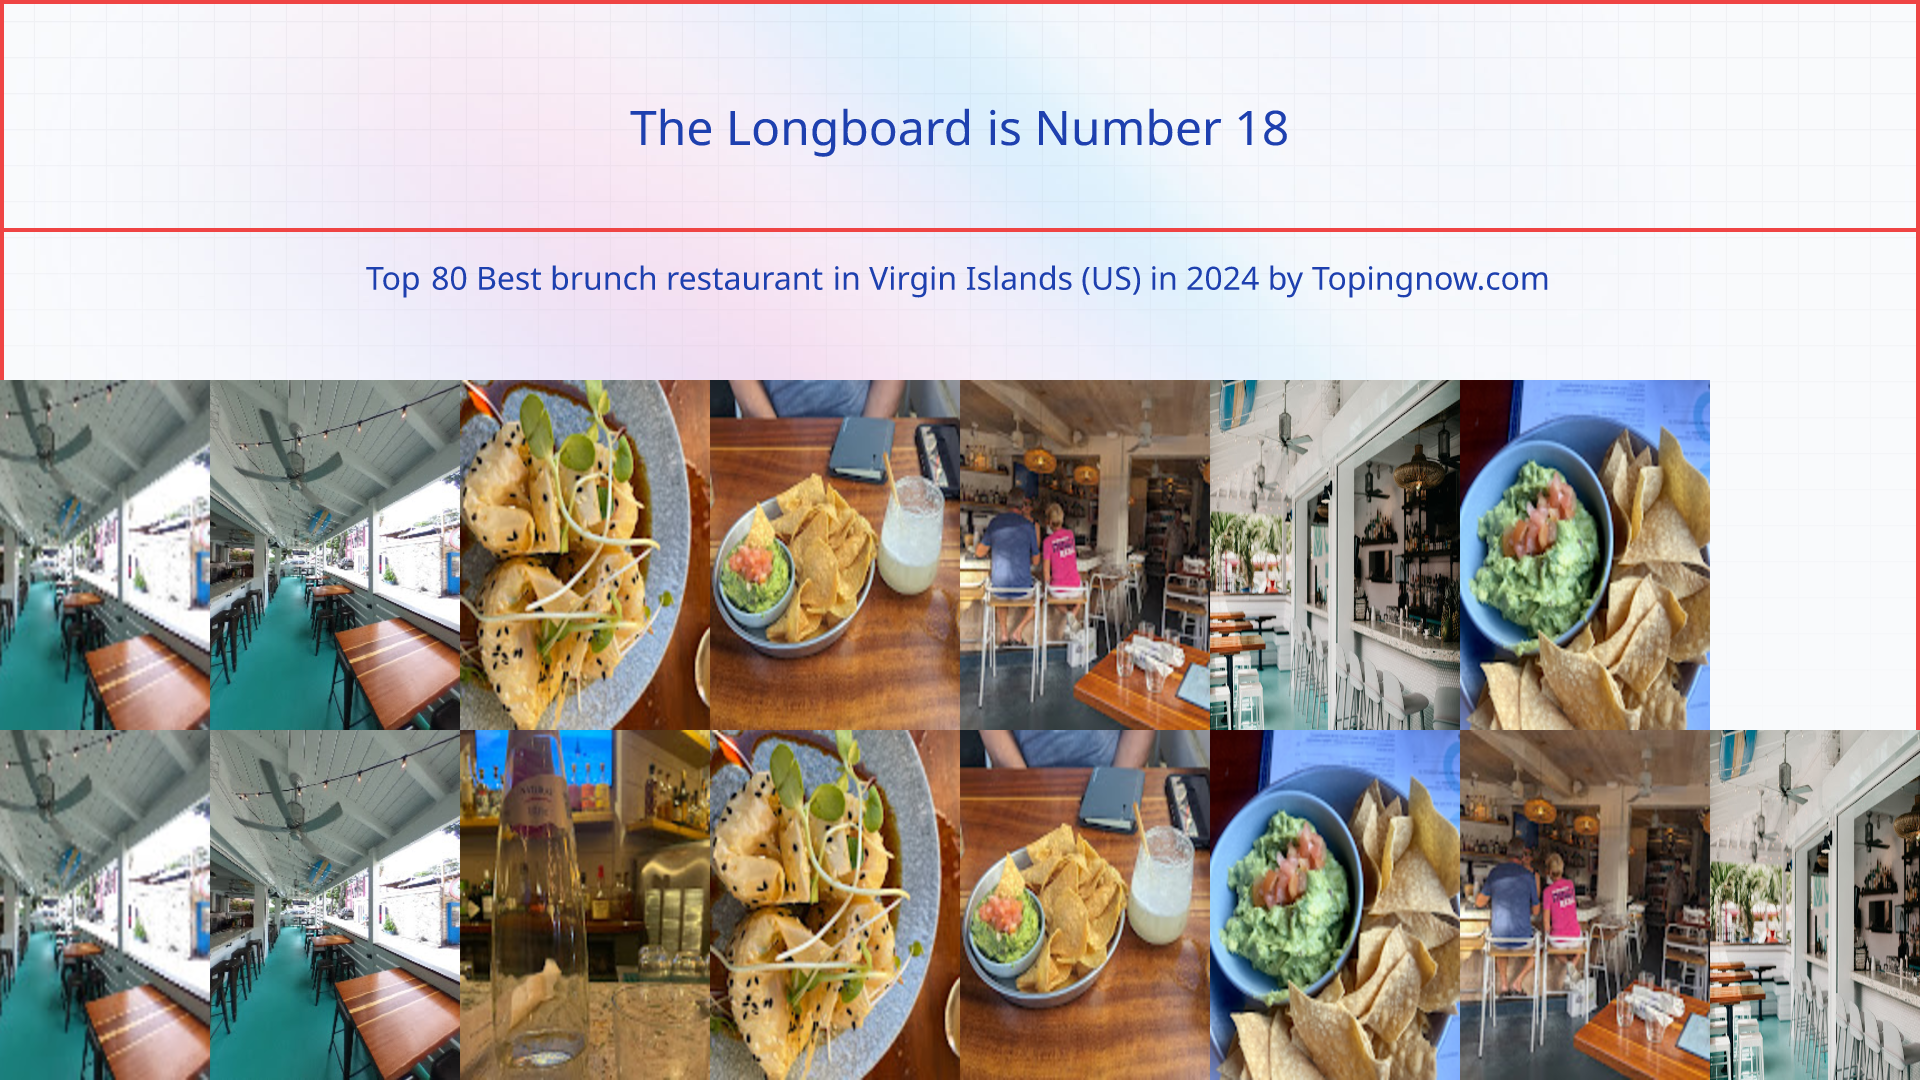 The Longboard: Top 80 Best brunch restaurant in Virgin Islands (US) in 2024